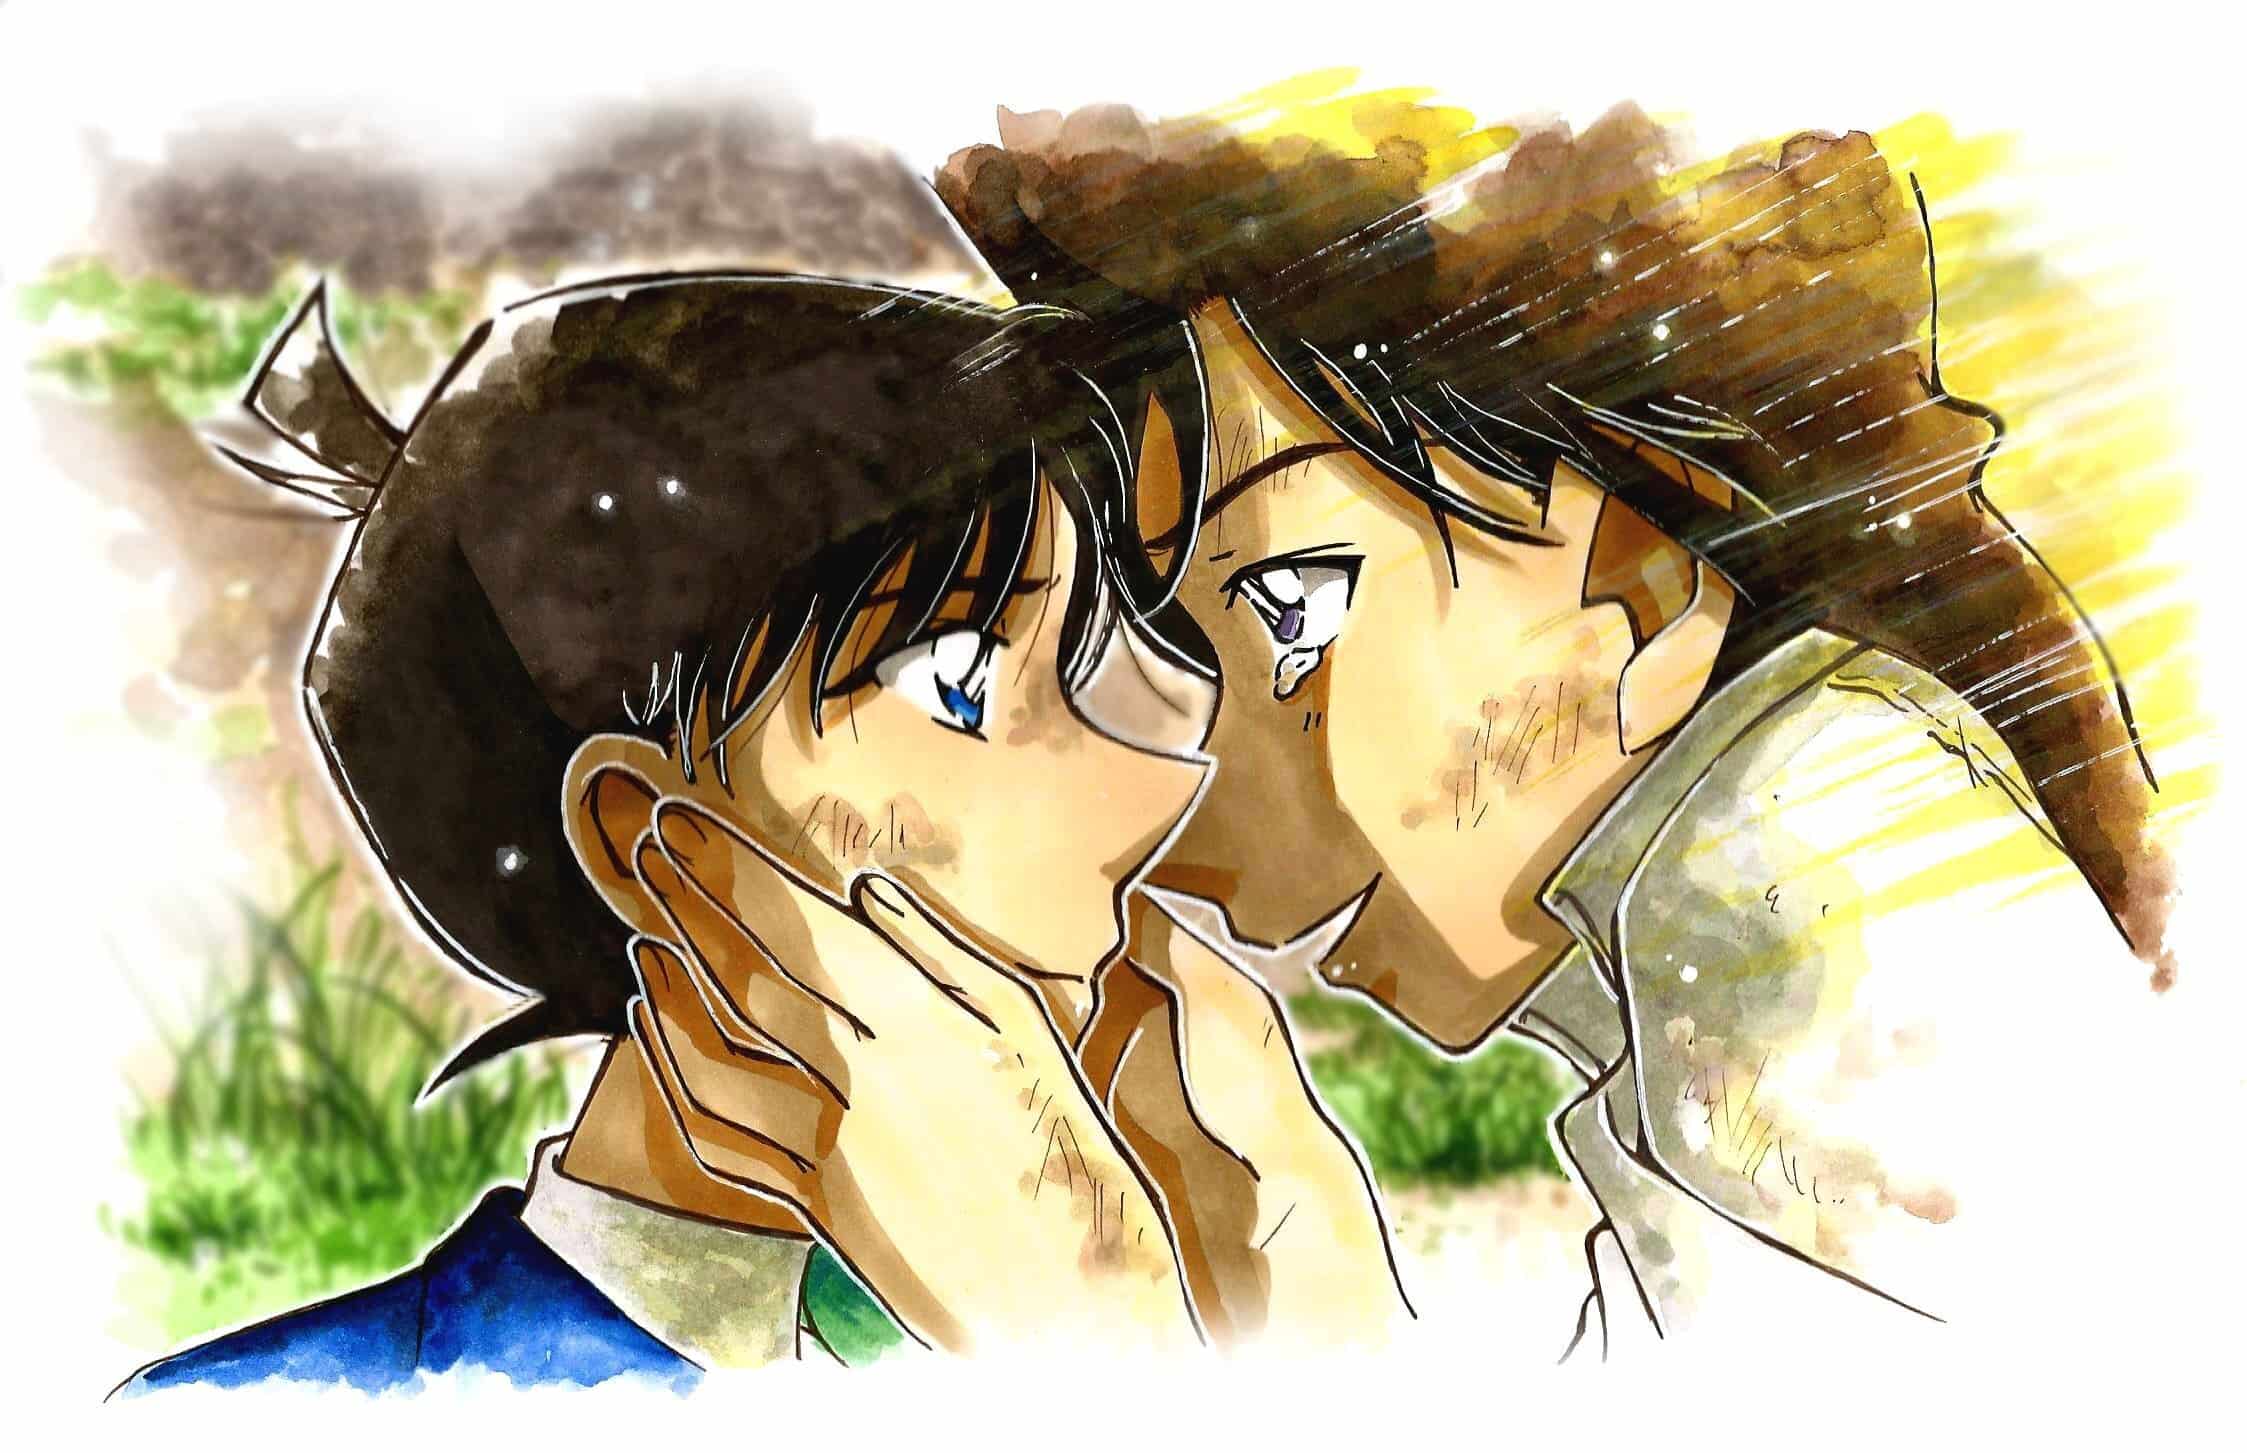 Hình Ảnh Shinichi Và Ran Hôn Nhau: Shinichi và Ran - cặp đôi được yêu thích nhất trong anime Conan. Hãy cùng nhìn lại khoảnh khắc ngọt ngào của họ trong hình ảnh hôn nhau. Sự ấm áp và lãng mạn sẽ khiến bạn cảm thấy rung động trong lòng. Hãy thưởng thức và cảm nhận nhé!